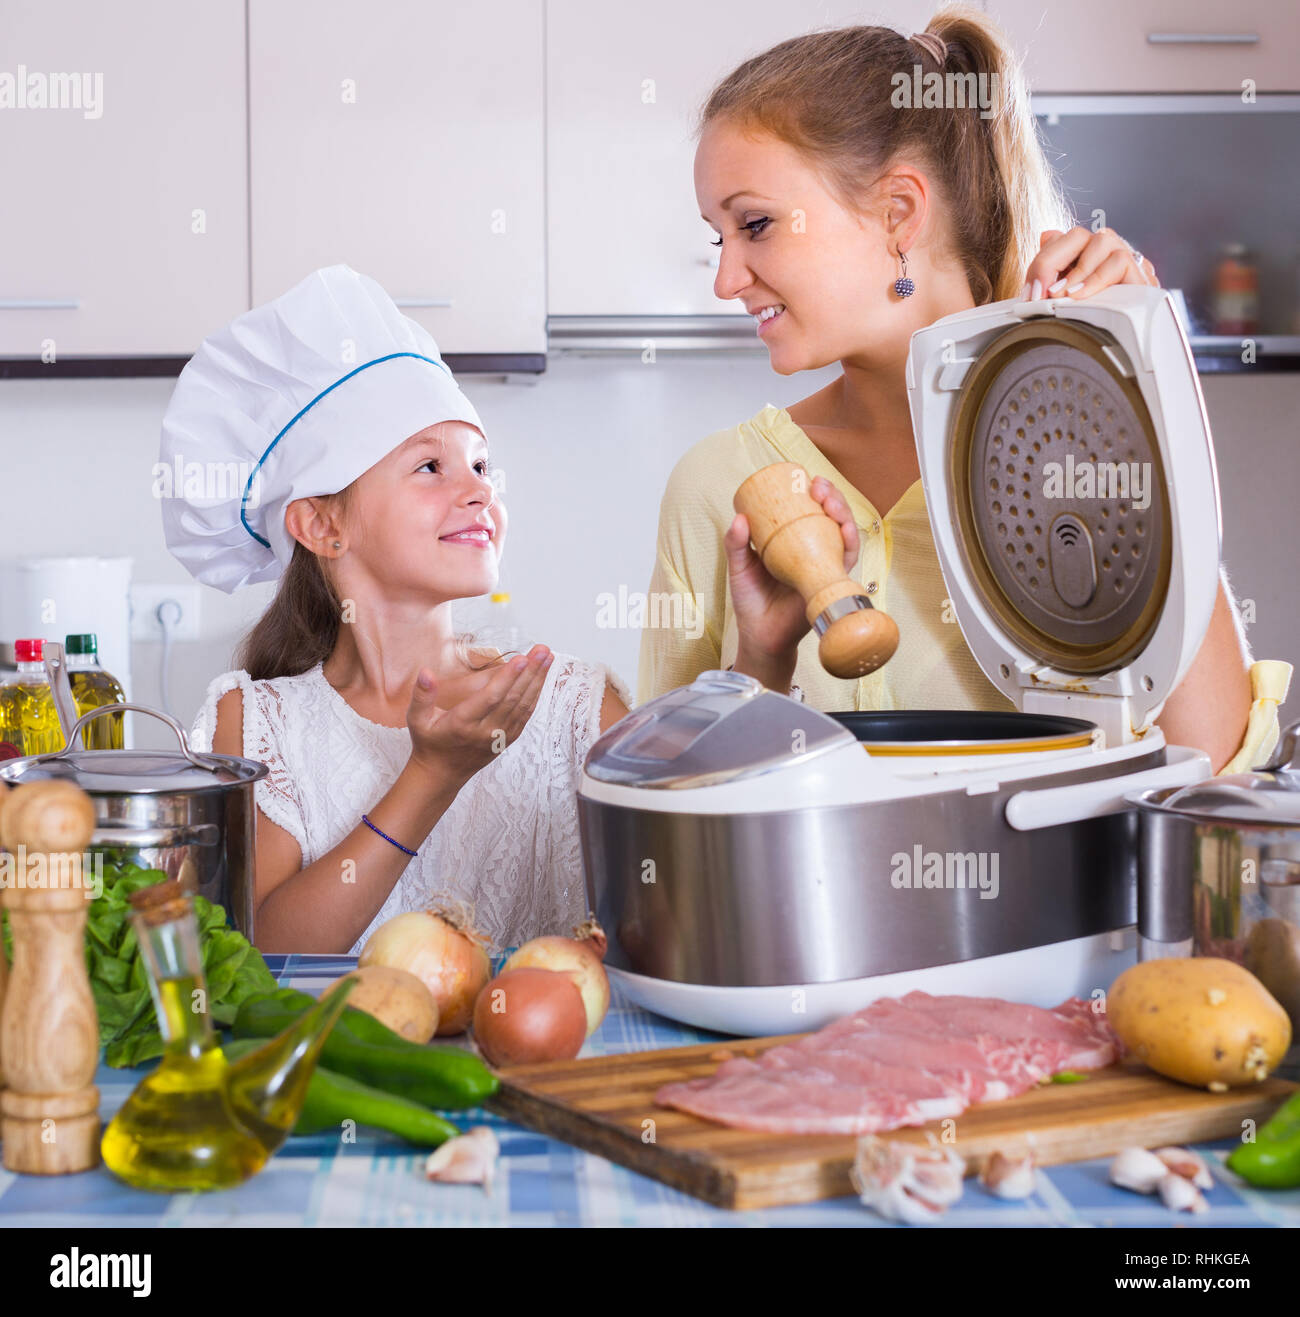 Kleines Mädchen hilft Mama Kochen Gemüse und Fleisch in multicooker in  Küche Stockfotografie - Alamy